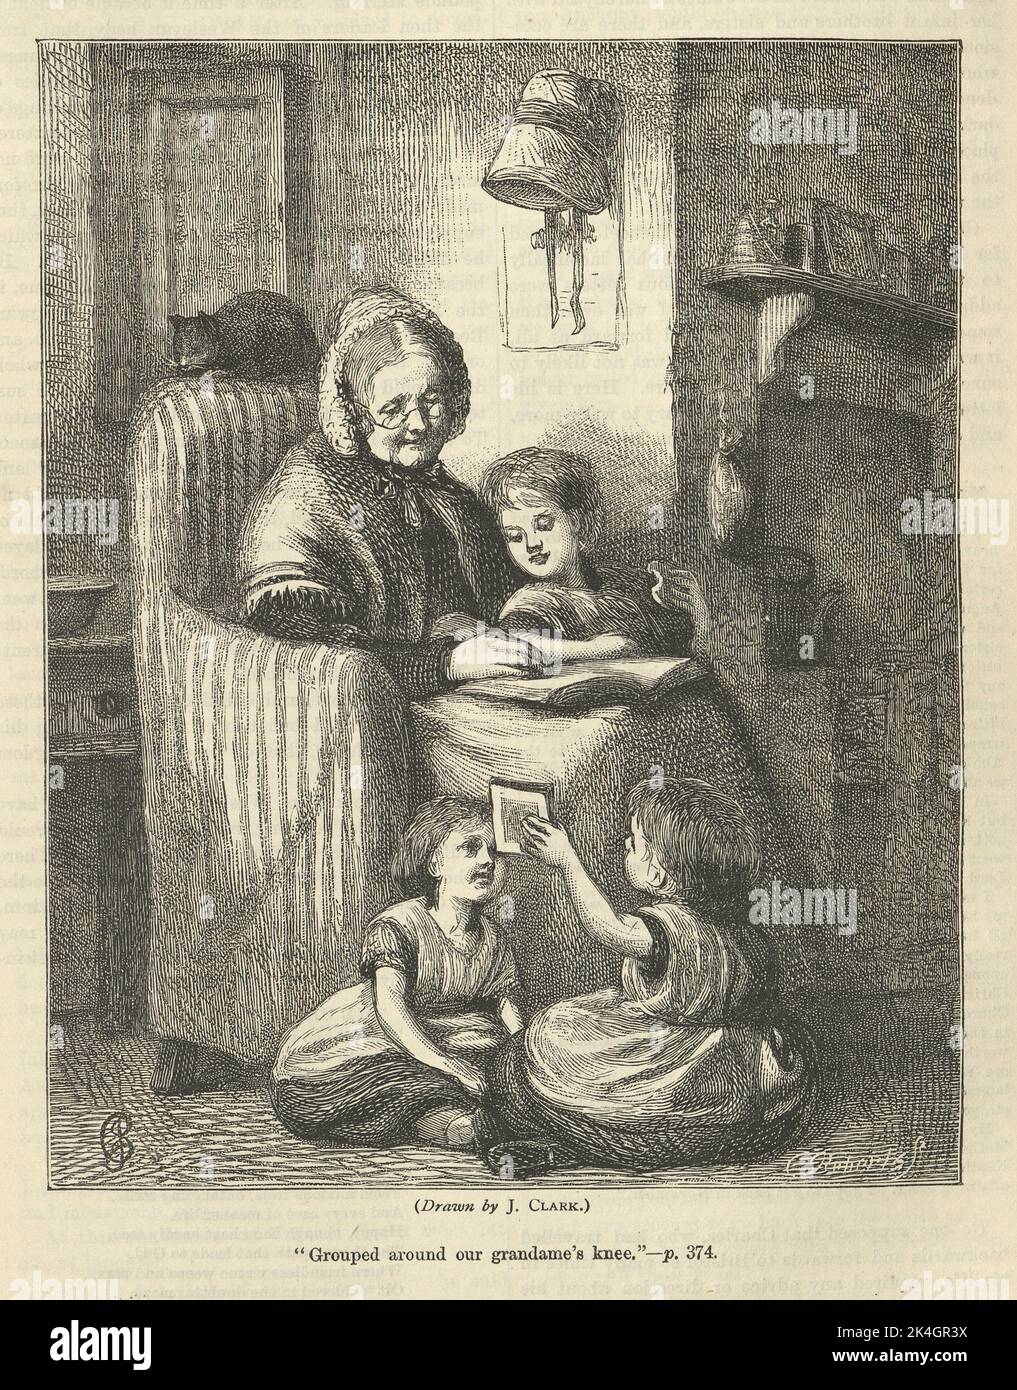 Vintage illustration grand-mère lisant des histoires à ses petits-enfants, jouant, Victorian, 1870s, 19th siècle. Regroupés autour du genou de notre grand-mère Banque D'Images